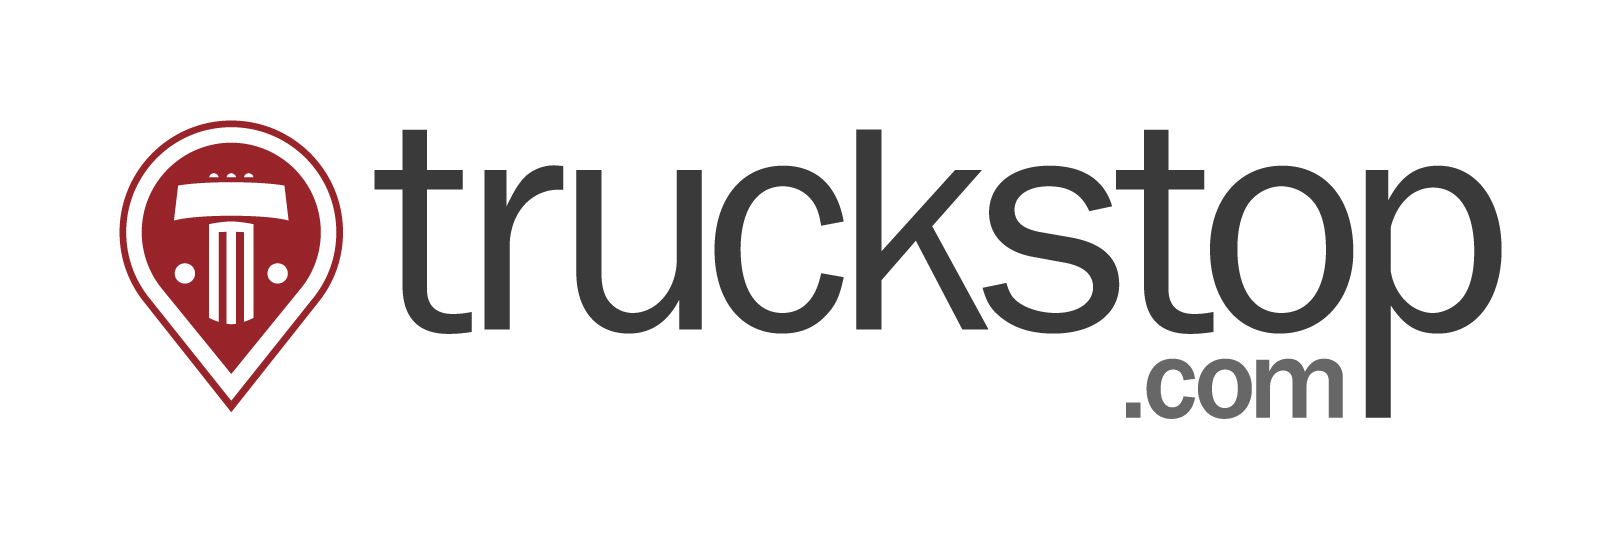 truckstop.com logo